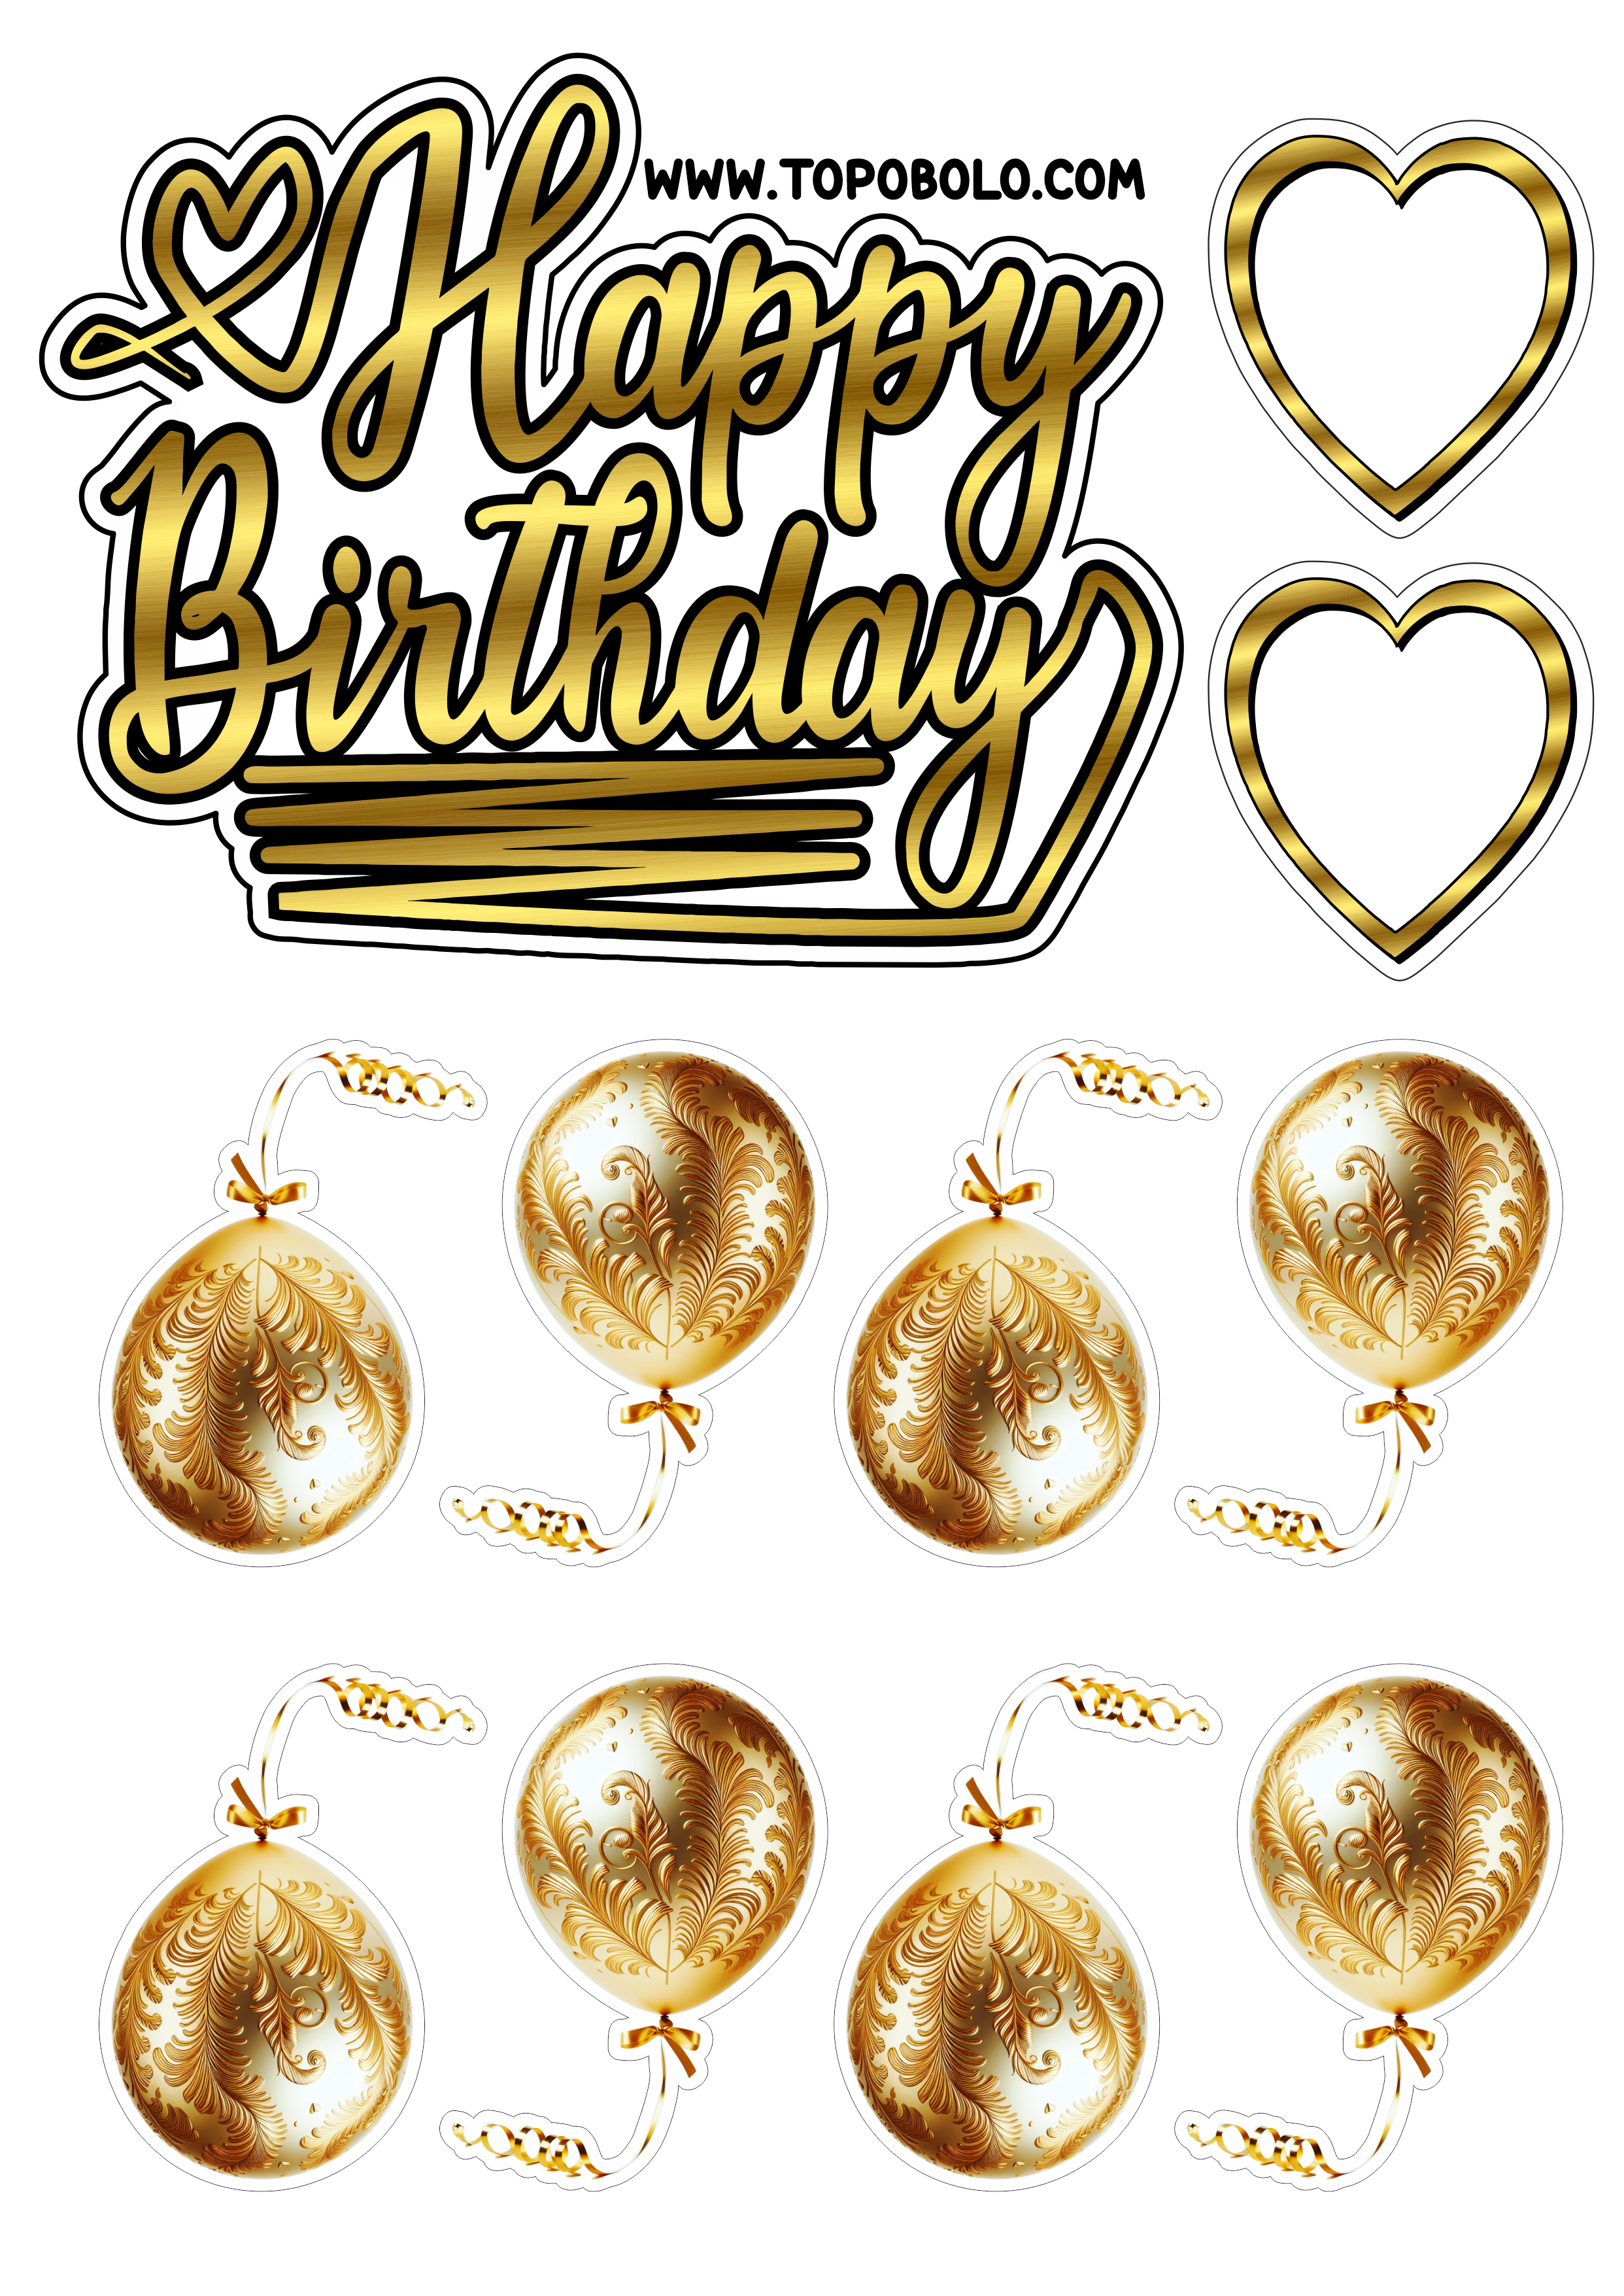 Topo de bolo para imprimir Happy Birthday aniversário dourado com corações e balões hora da festa png